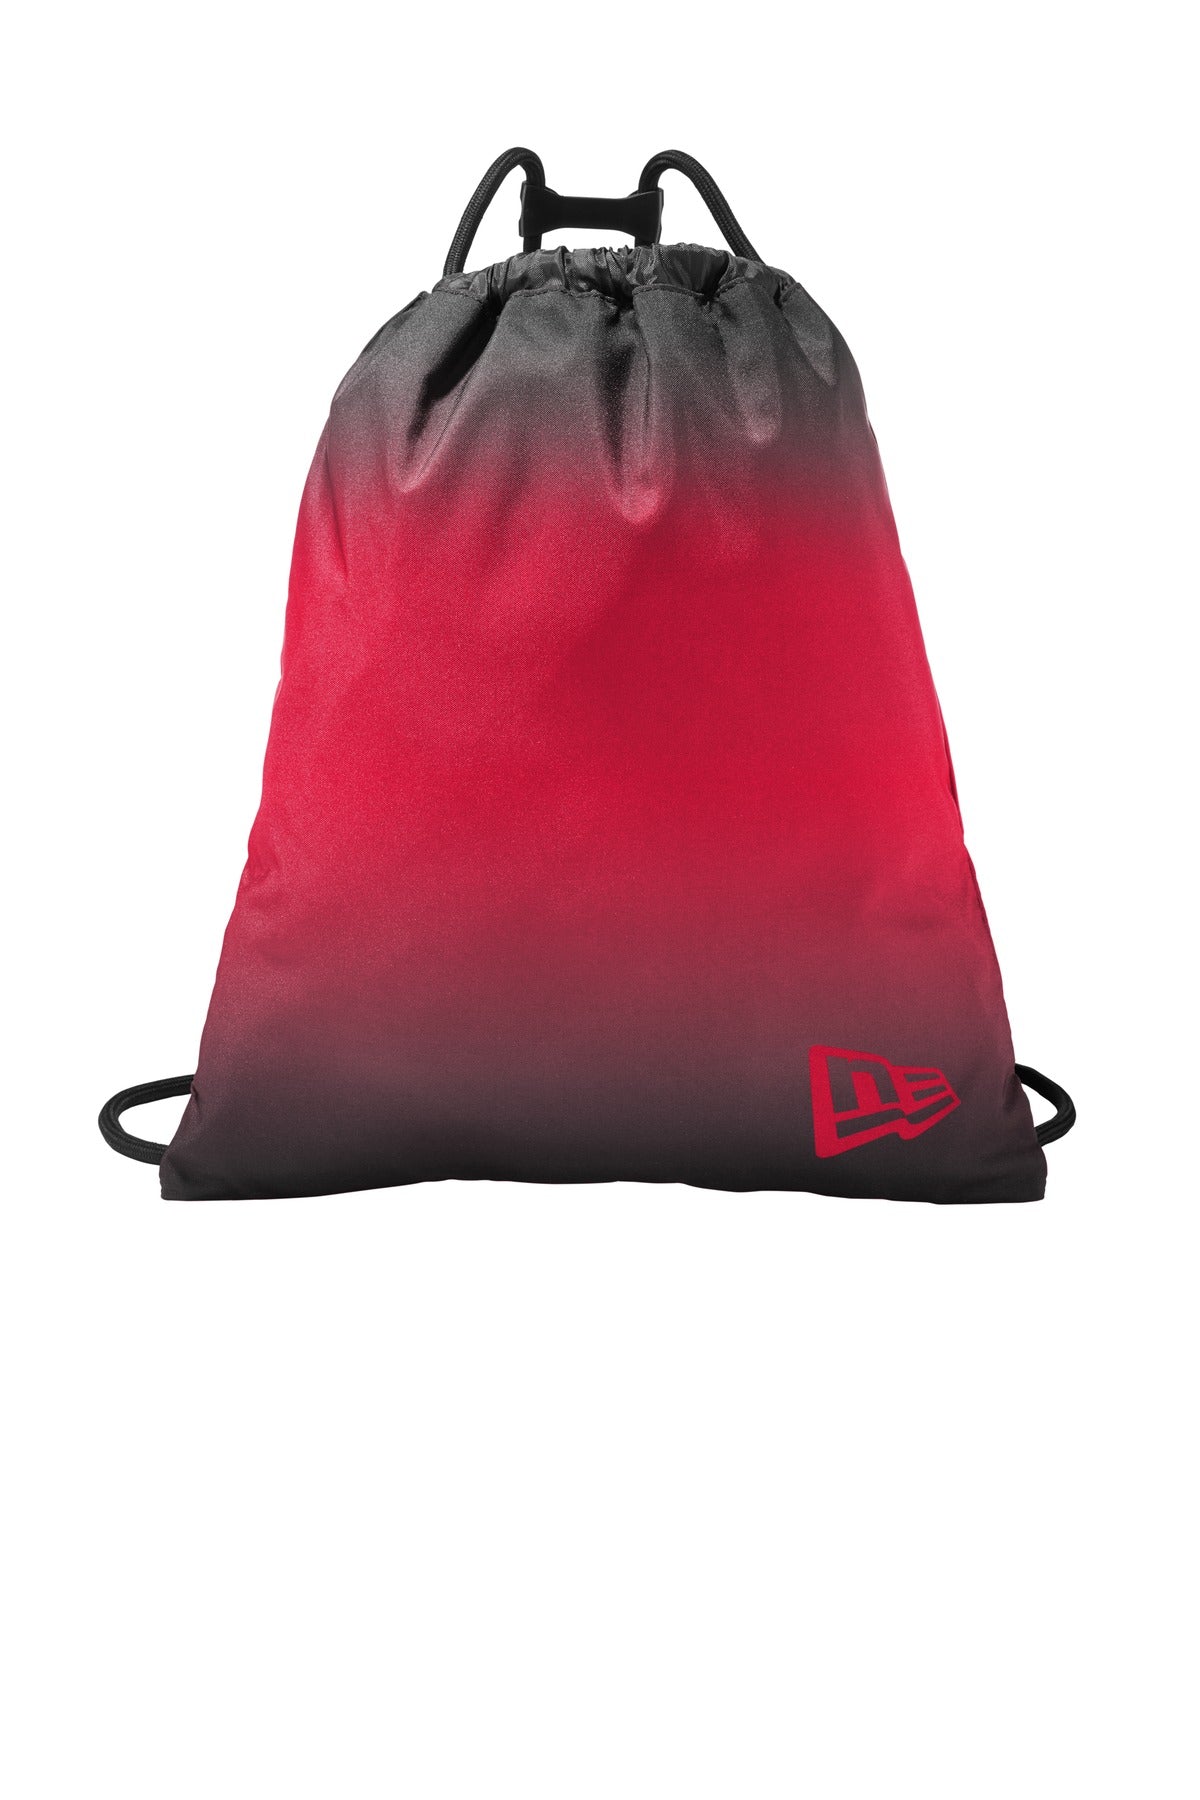 Bags Scarlet Ombre OSFA New Era